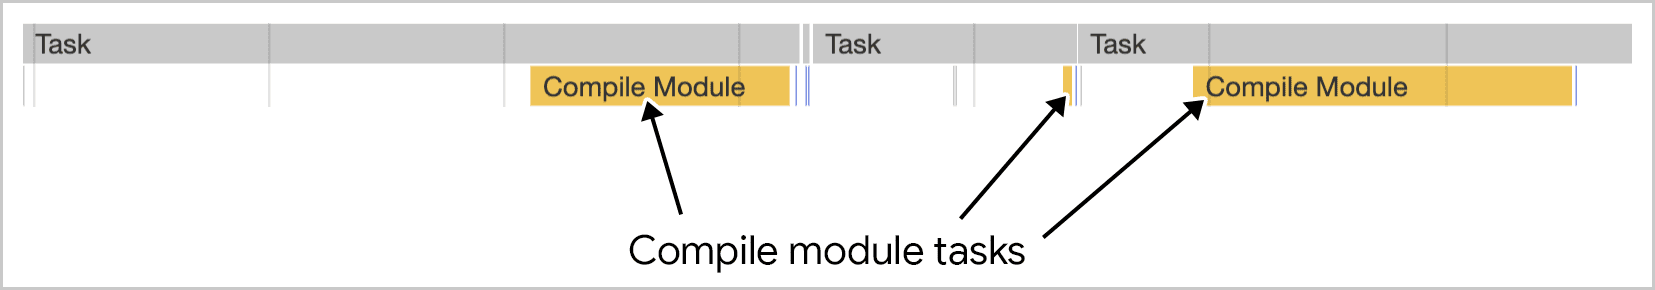 La compilazione di moduli funziona in più attività come visualizzato in Chrome DevTools.